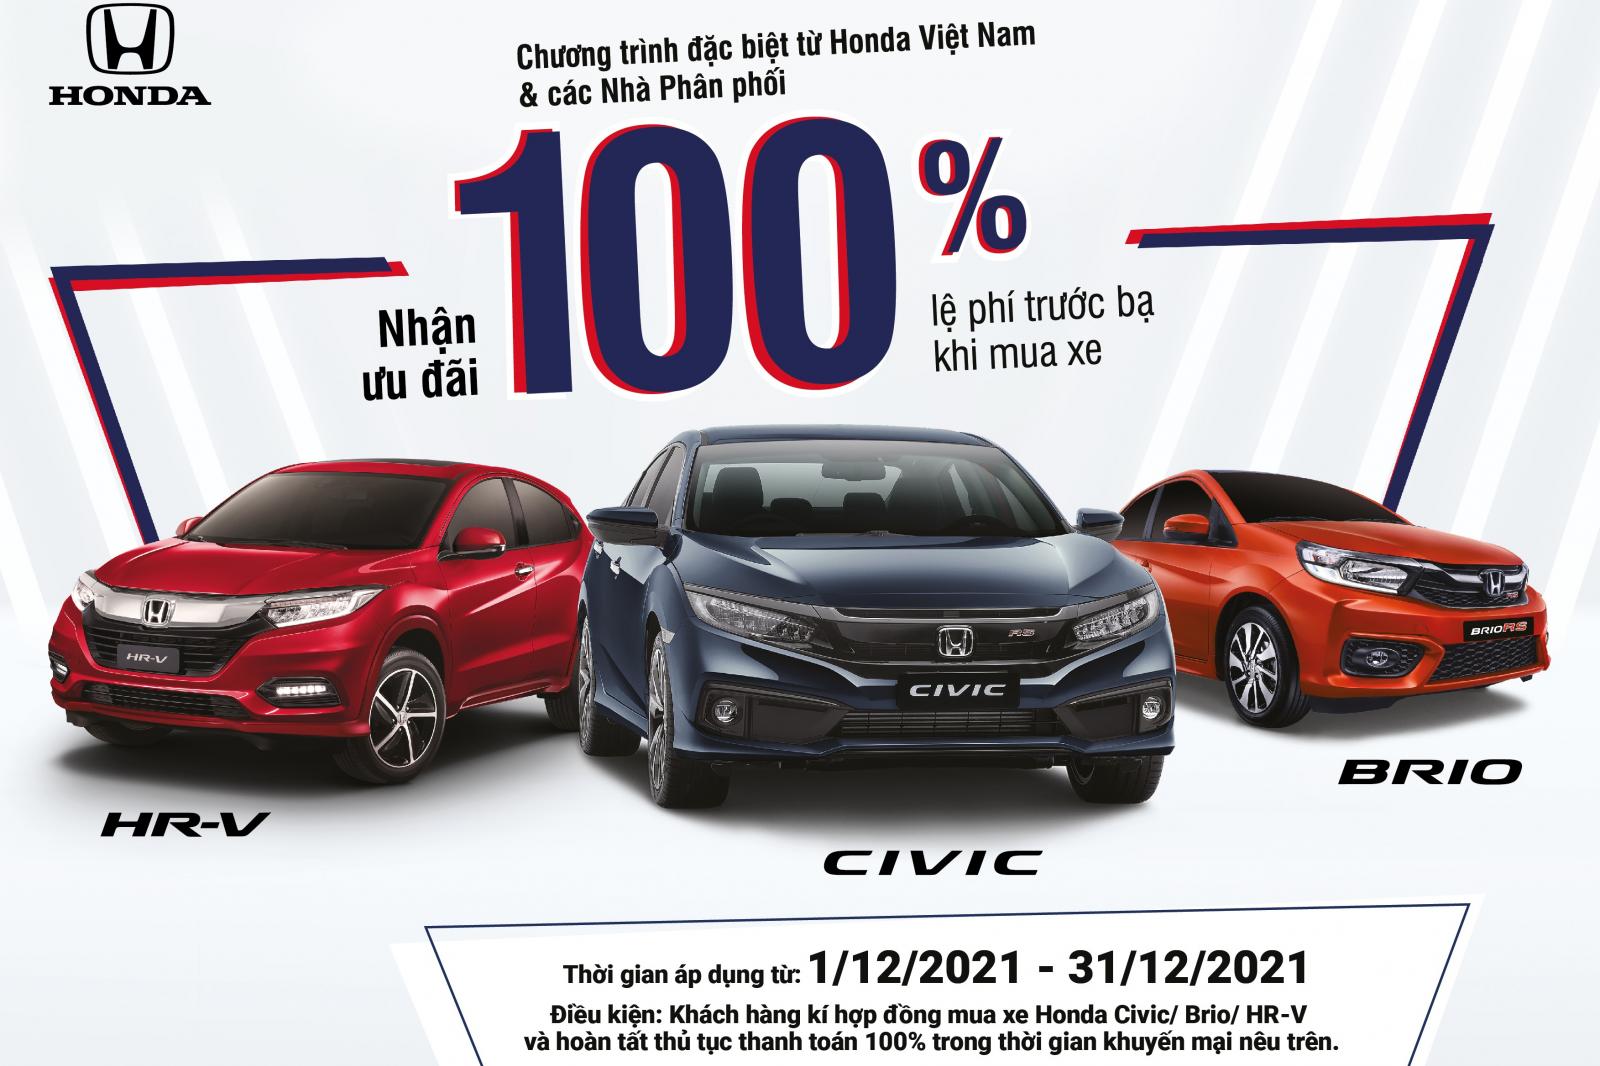 Honda tặng 100% lệ phí trước bạ cho khách mua Civic, HR-V và Brio 1